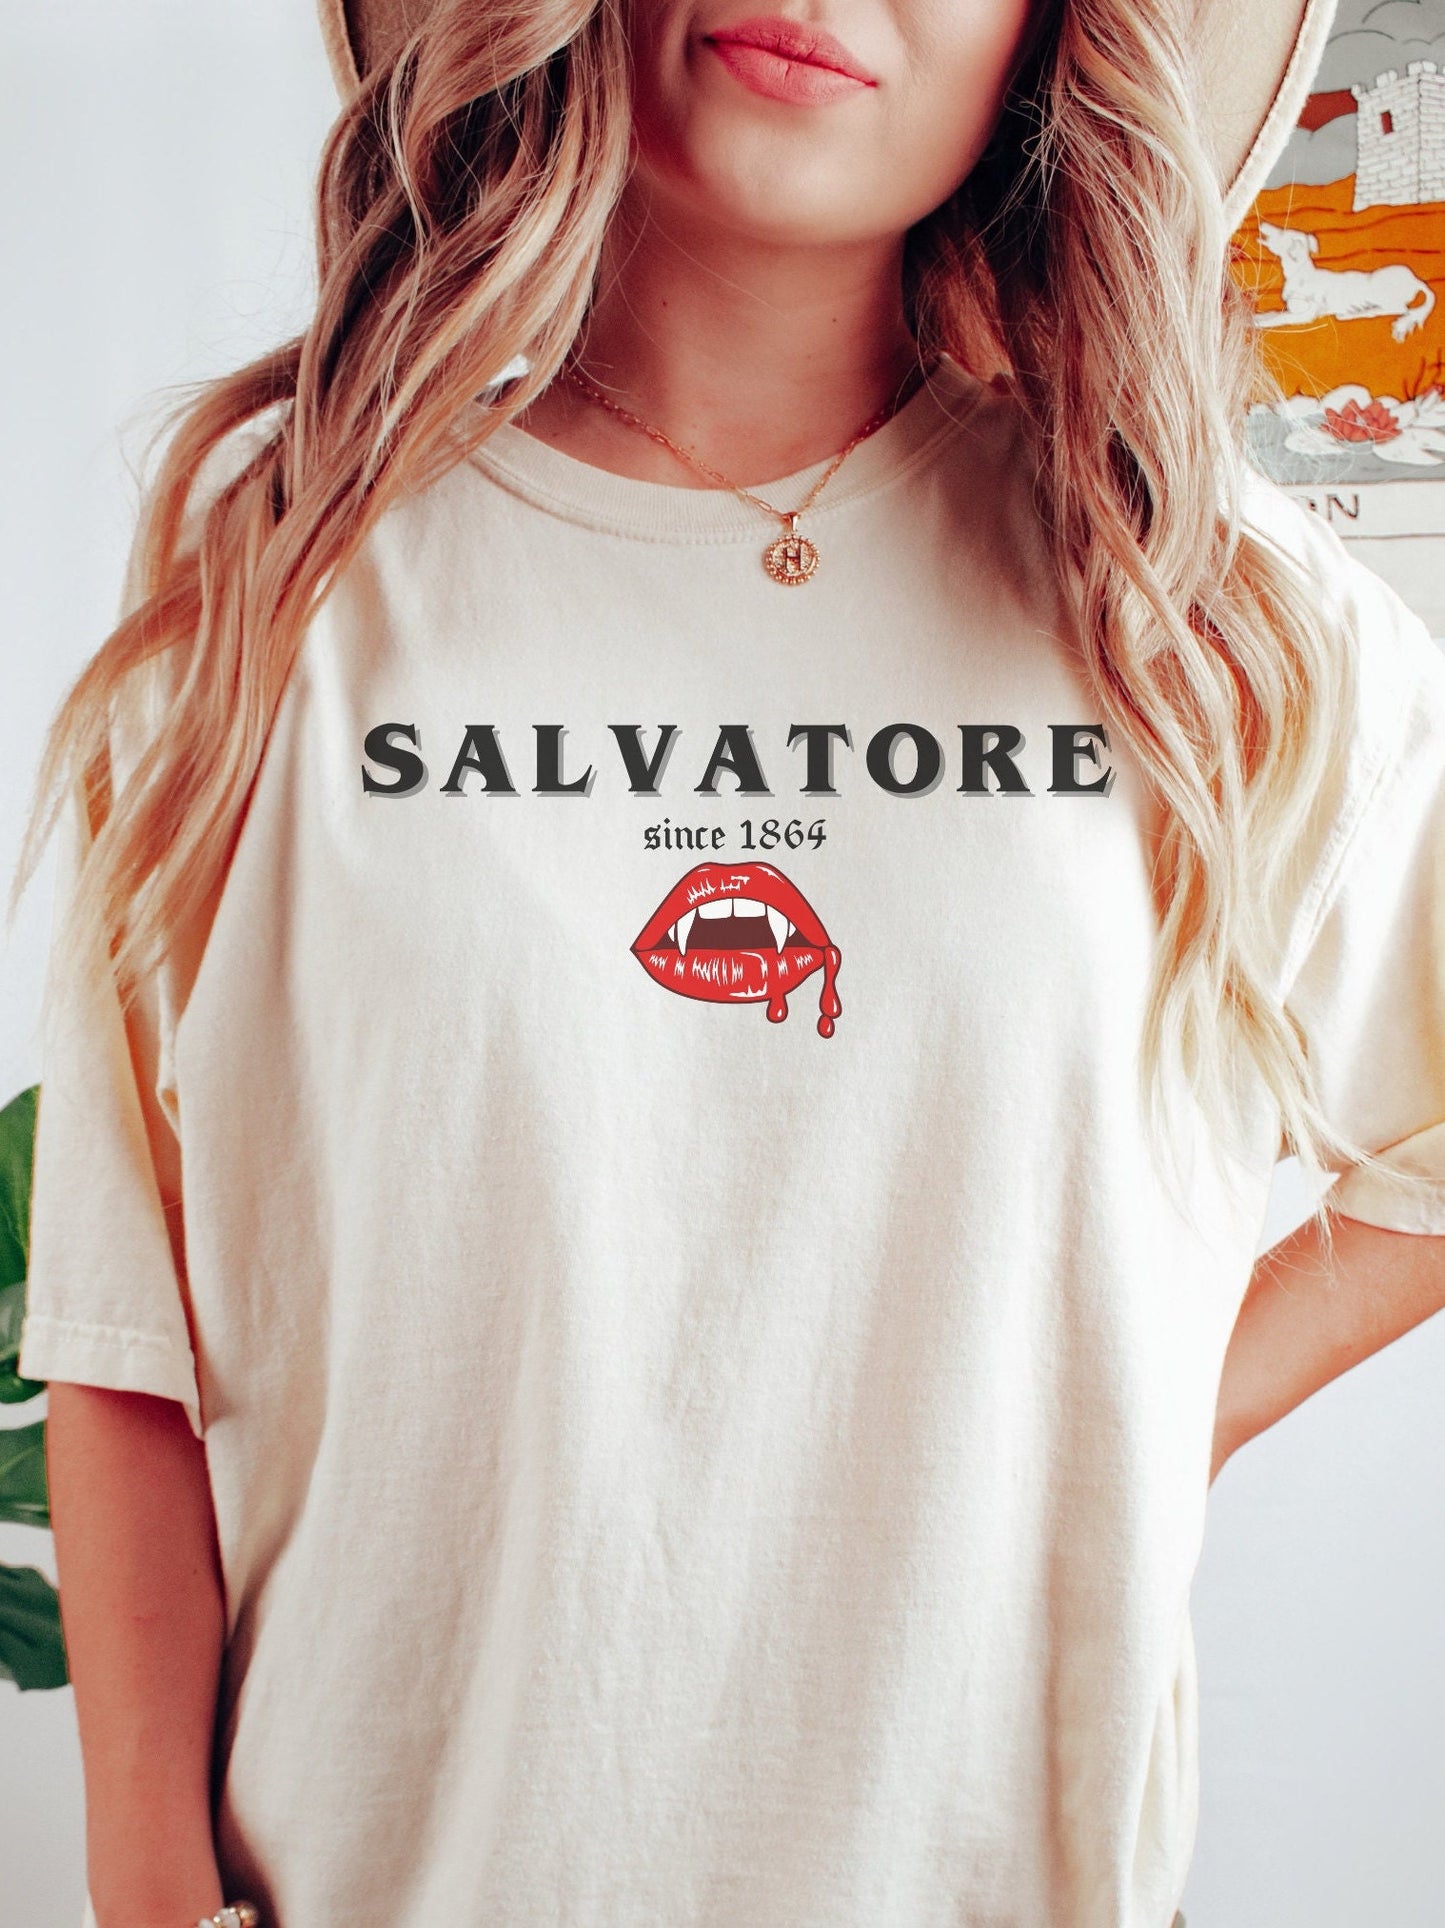 Vampire Diaries, Salvatore brothers shirt, Vampire Diaries Shirt, Vampire fan gift, TVD Fan gift, Tvd merch, Salvatore brothers